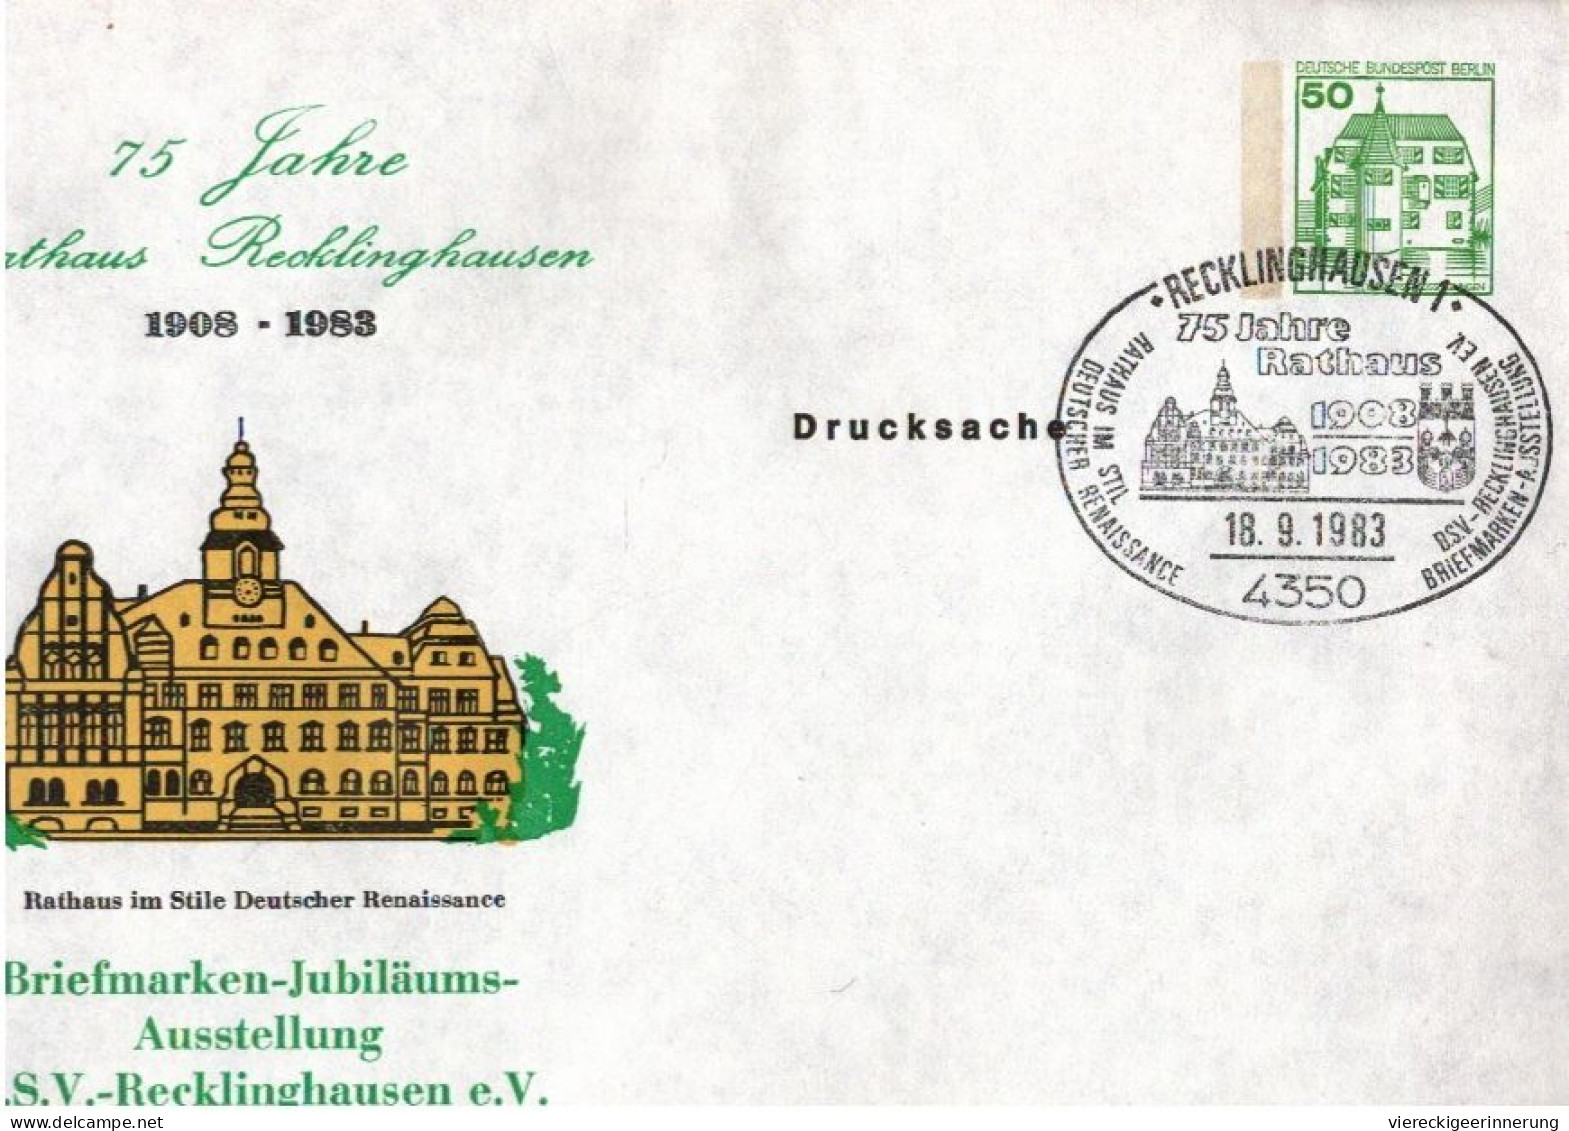 ! 1 Karton ca. 1340 deutschen Ganzsachen Bund, Berlin, mit Sonderstempeln, ca. 1978-1982, Privatganzsachen, Essen, Lot